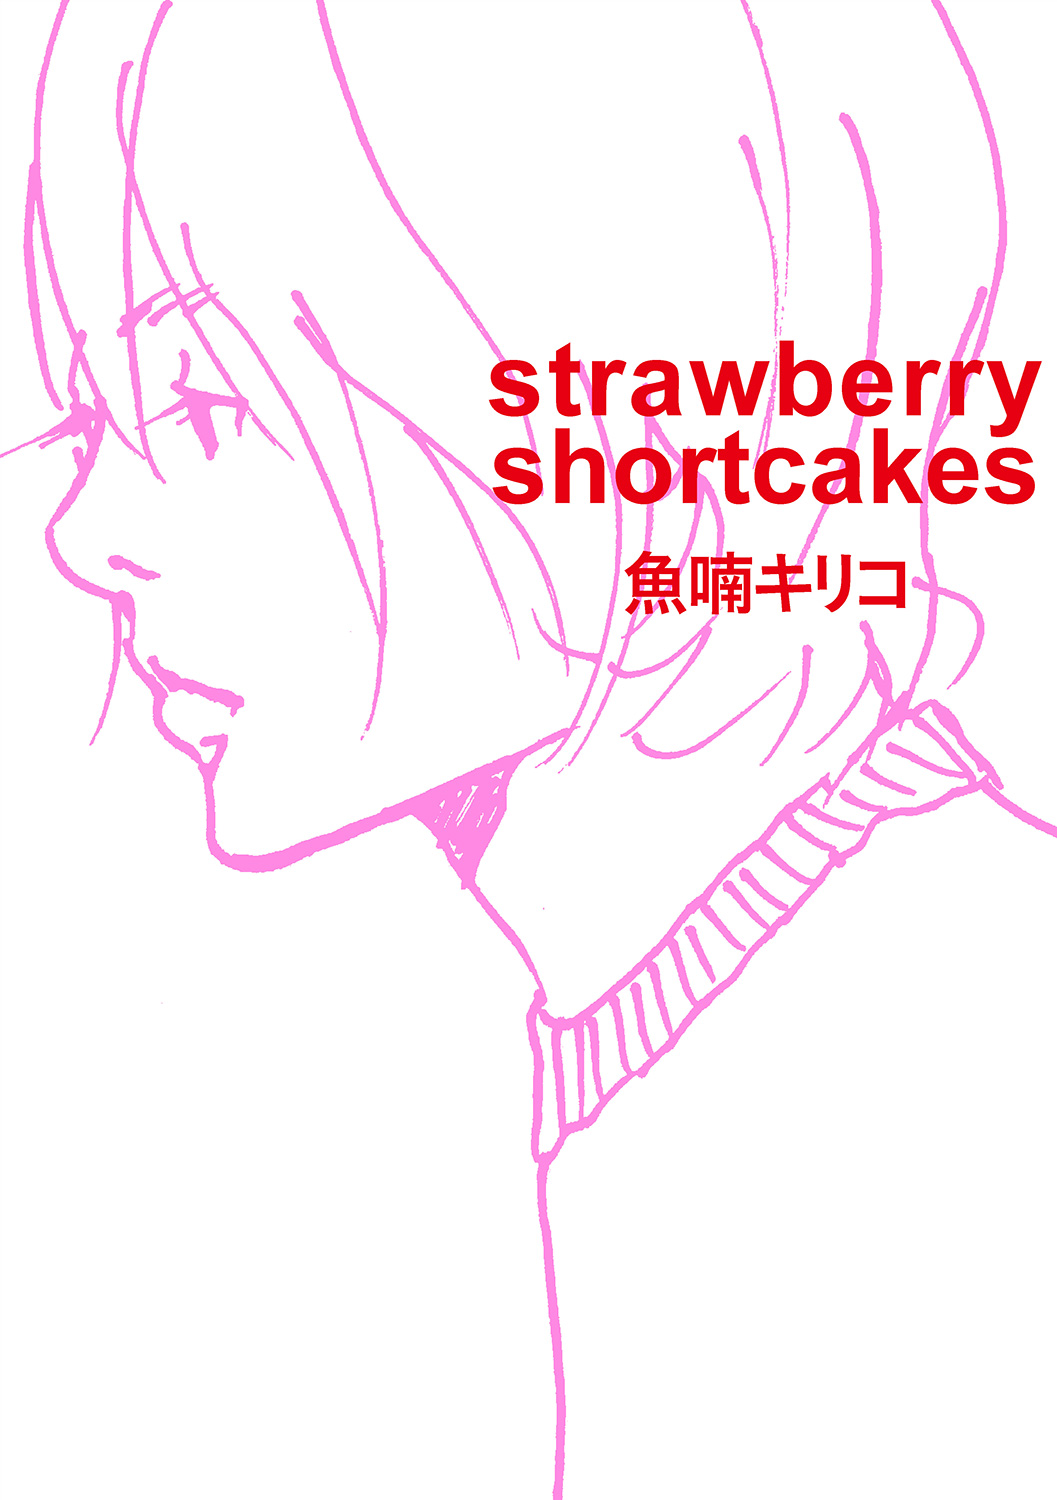 魚喃キリコ『strawberry shortcakes』